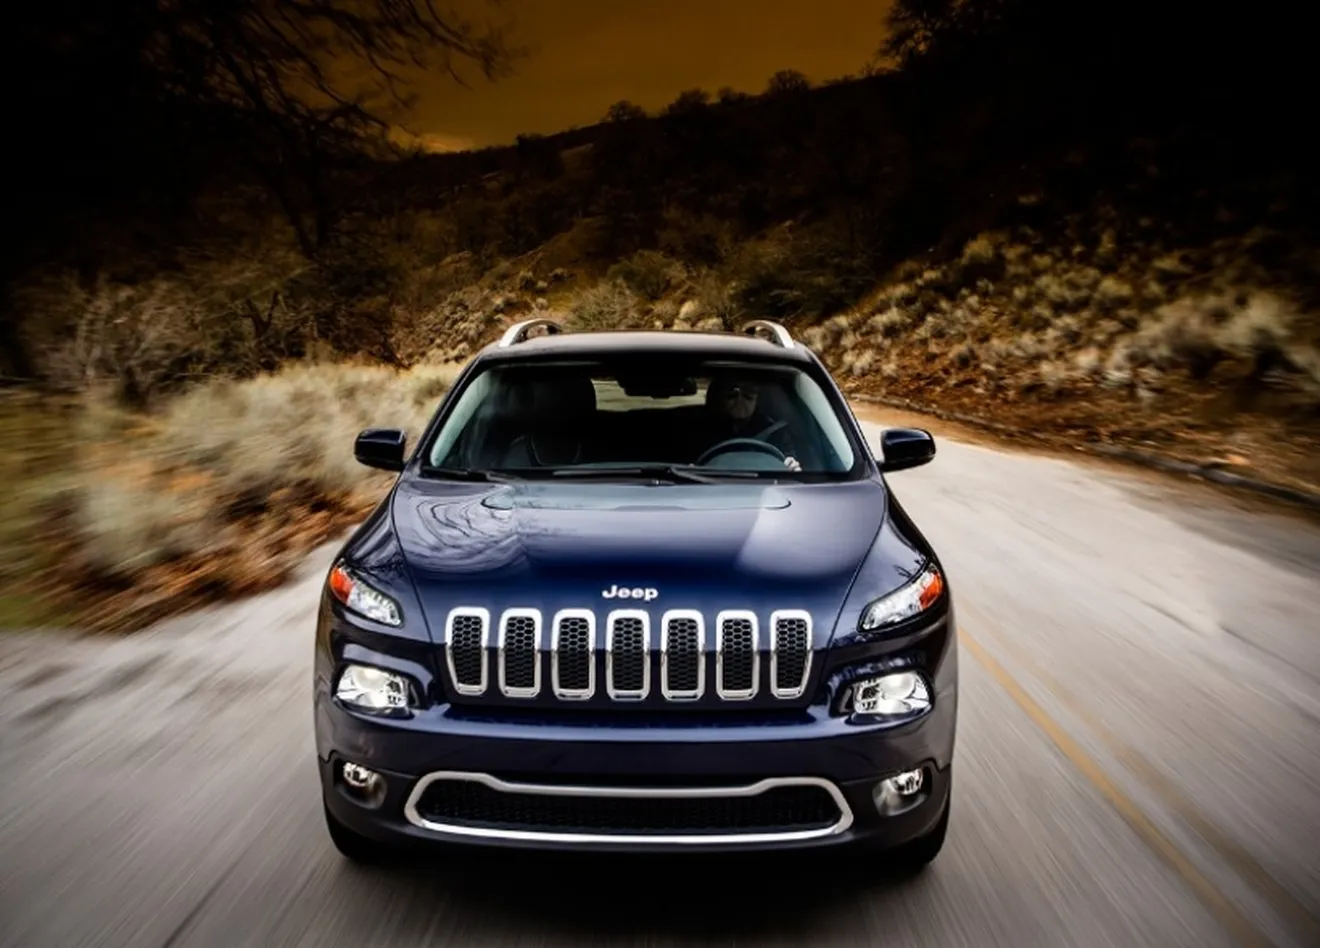 El Jeep Cherokee 2014 vuelve cargado de controversia por su diseño